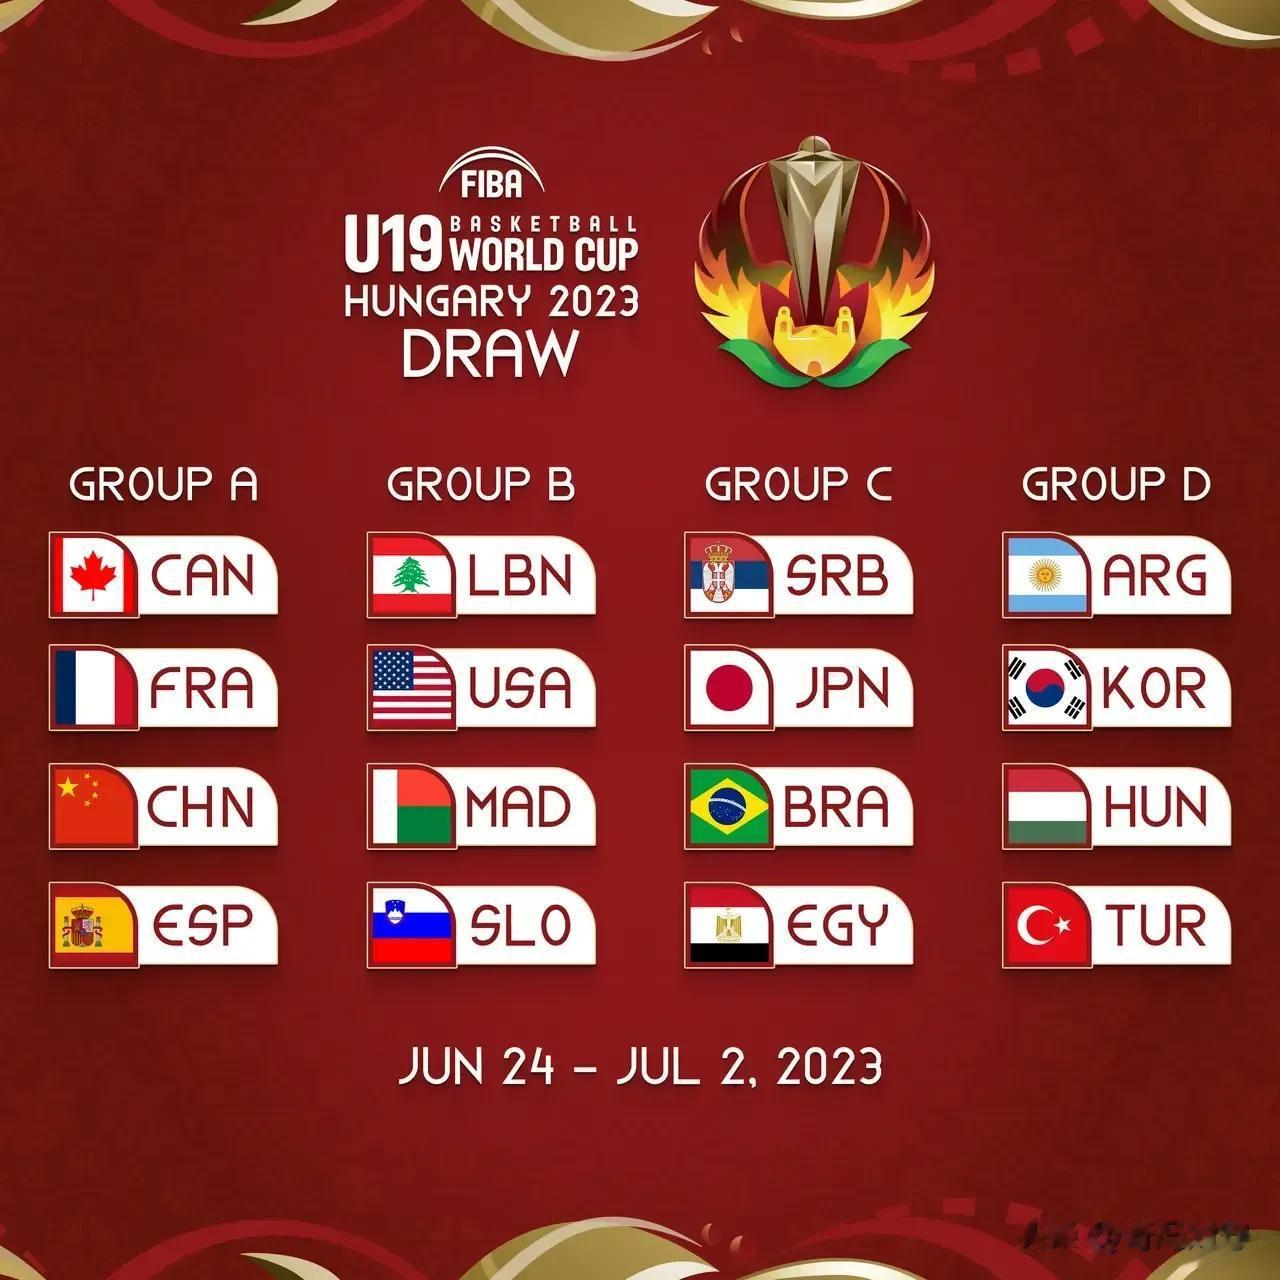 2023年U19世界杯中国队抽签抽中“死亡之组”

3月14日世界篮联公布202(1)